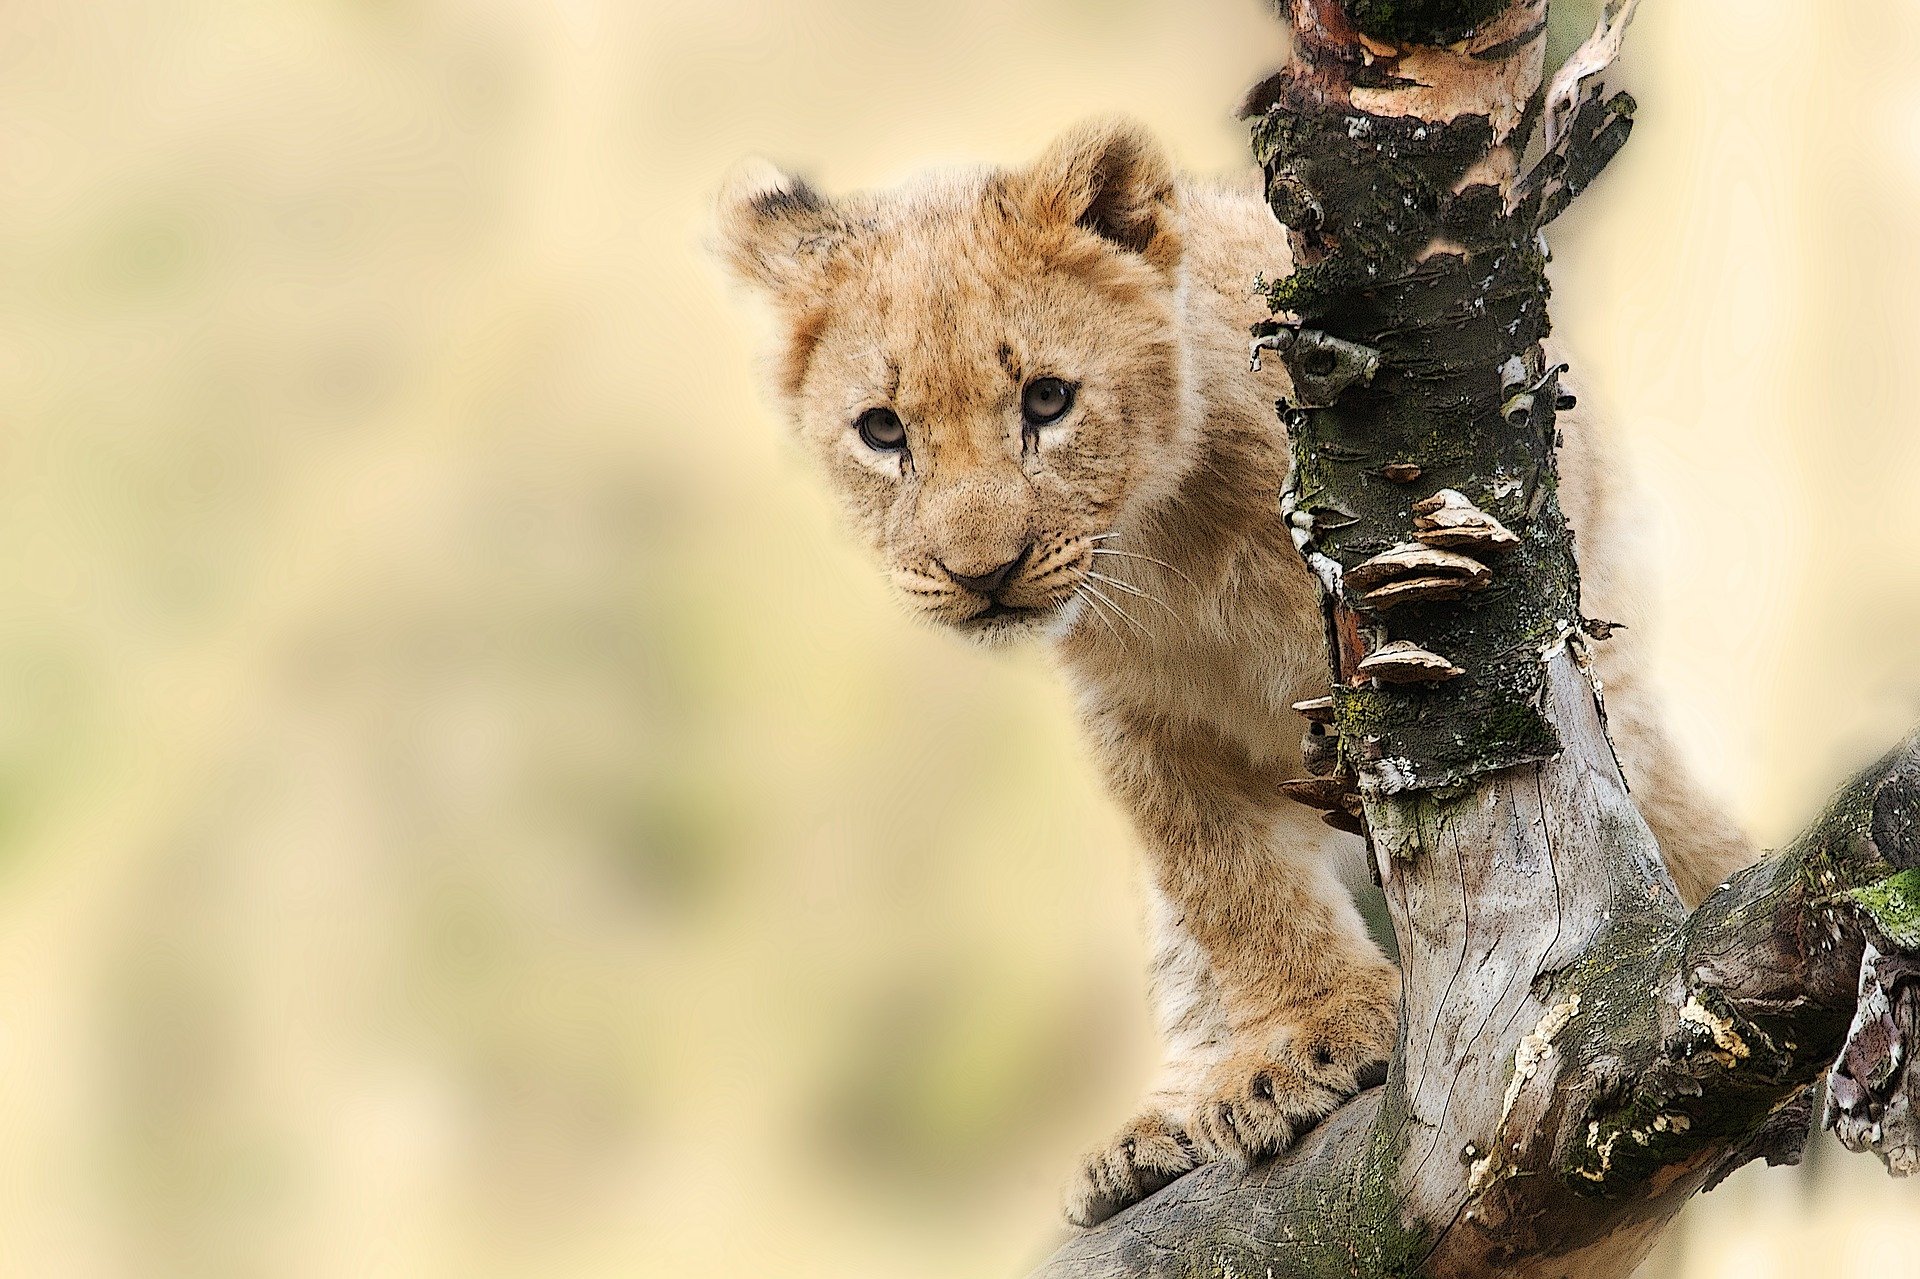 alt text: Foco da imagem de um filhote de leão em uma árvore, à direita da imagem. O fundo da imagem está desfocado.